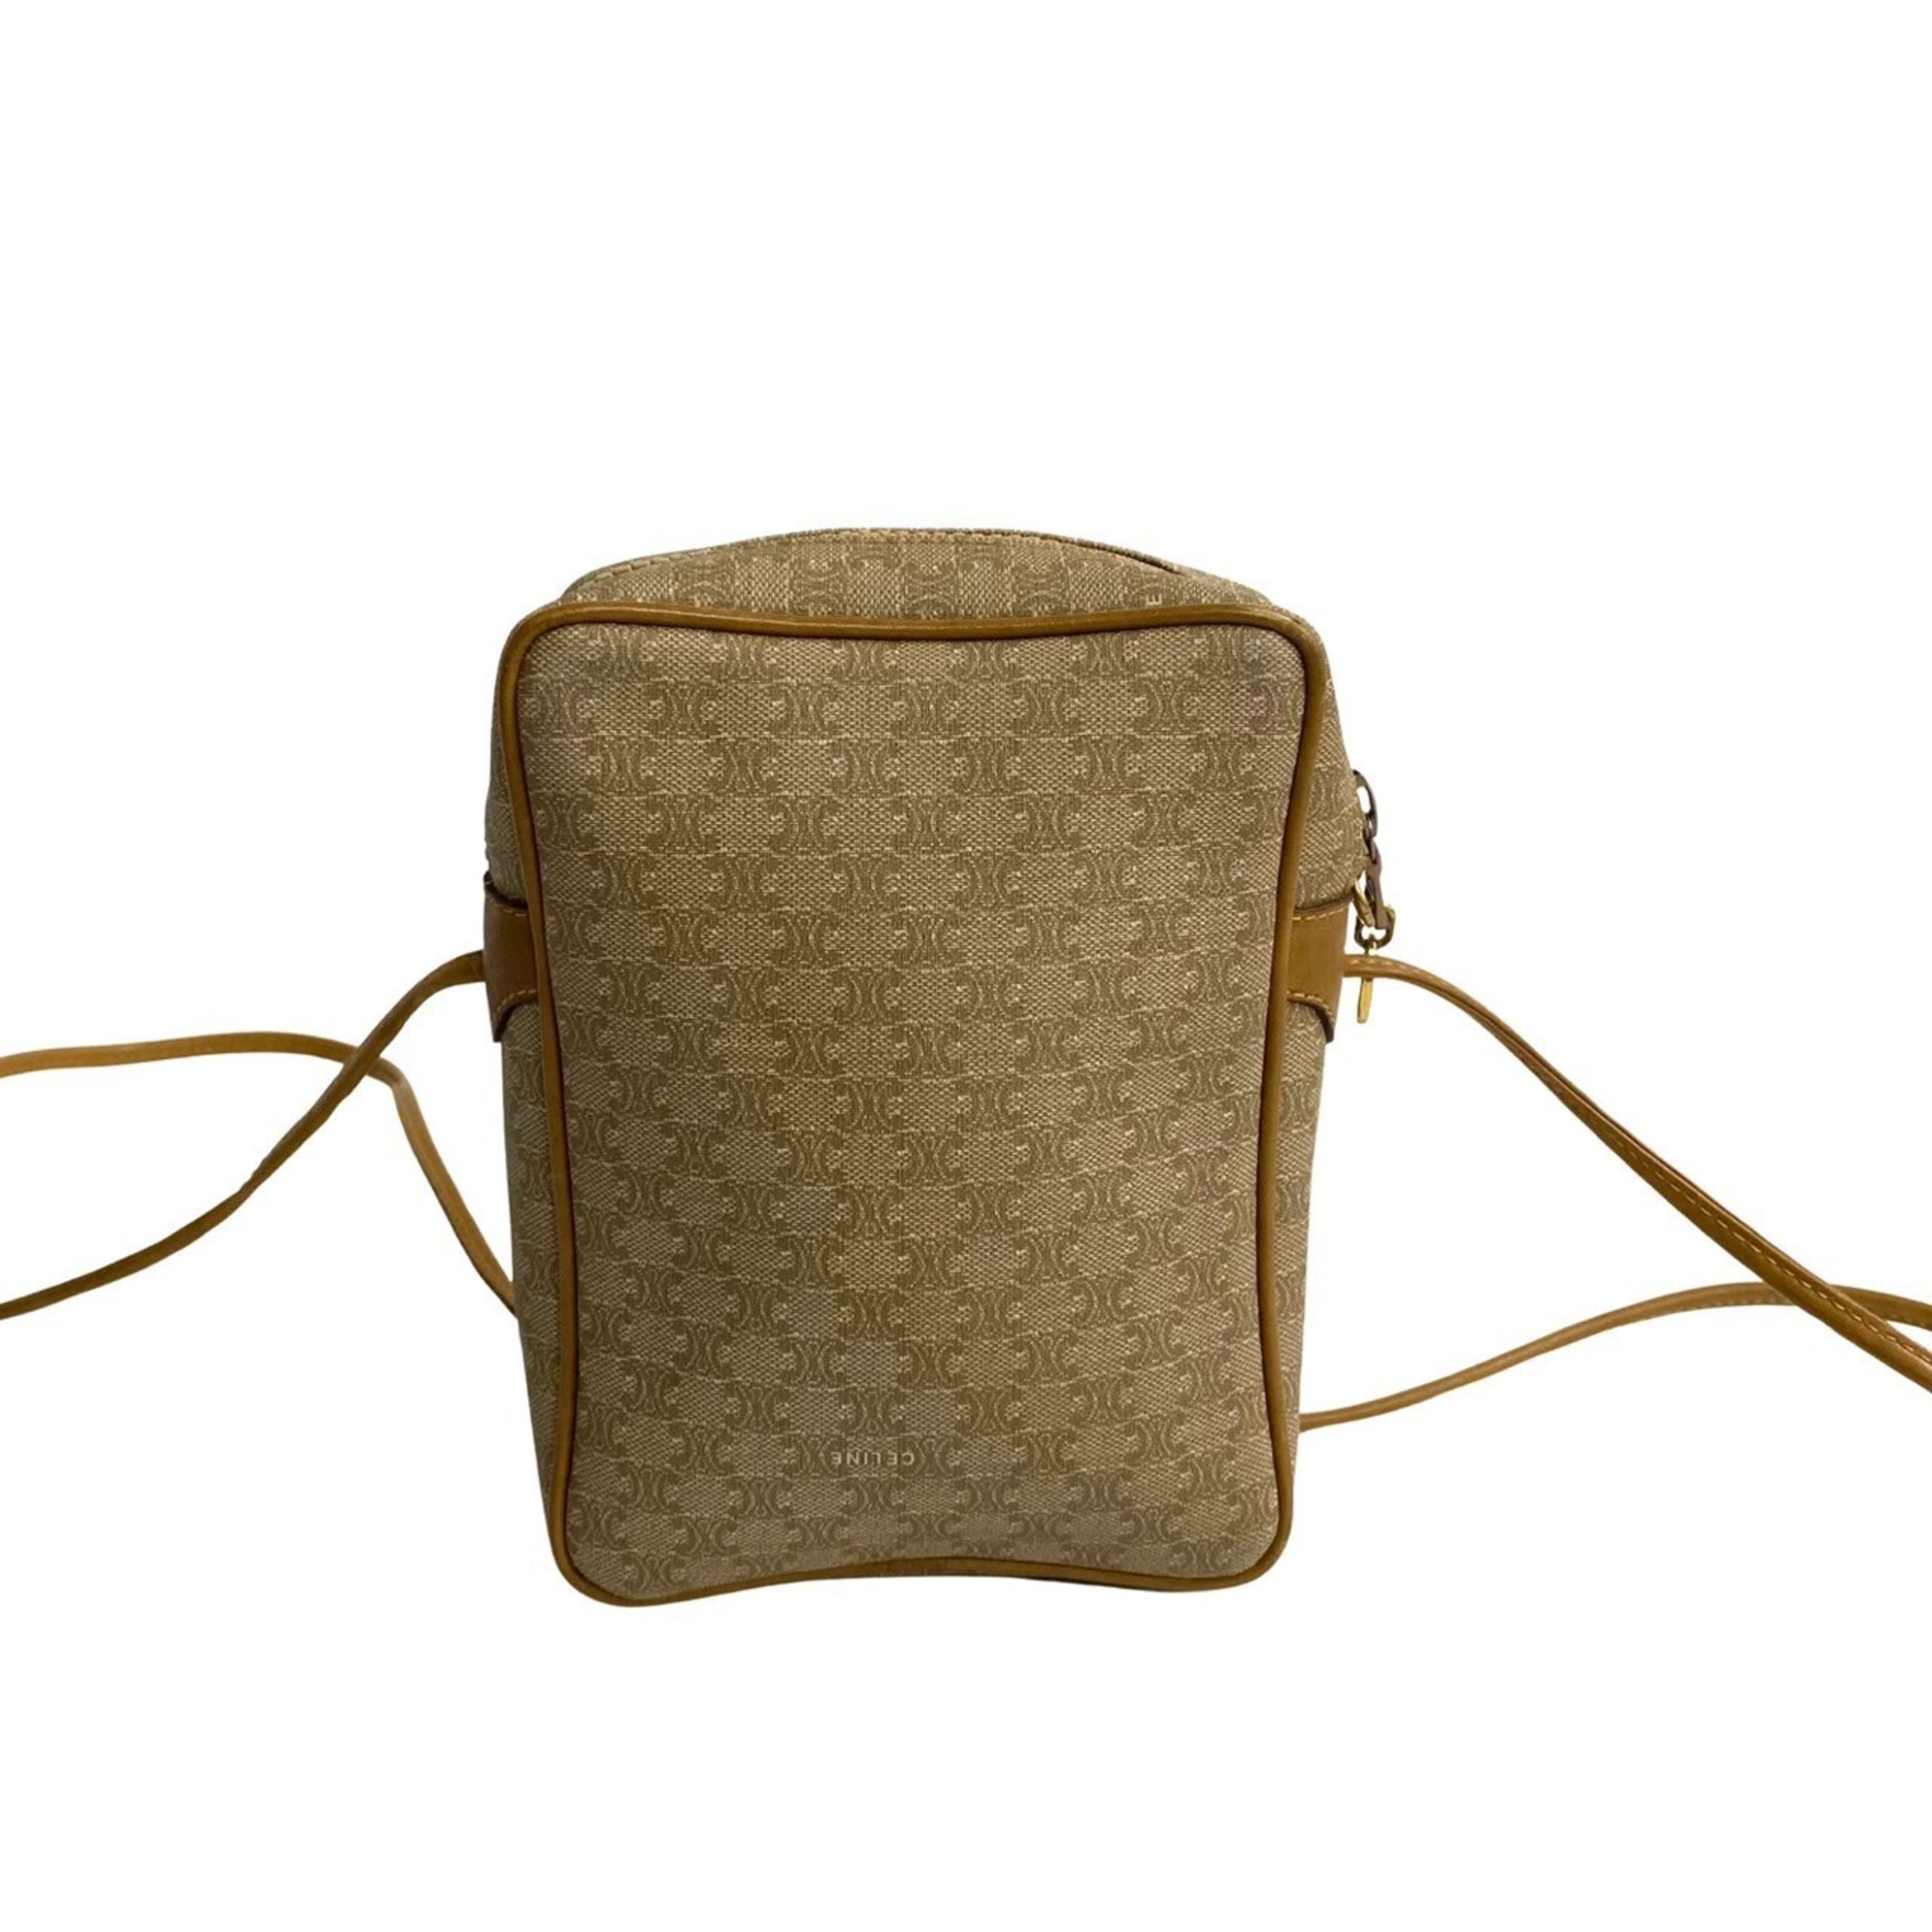 CELINE Macadam Blason Leather Shoulder Bag Pochette Brown Beige 70078